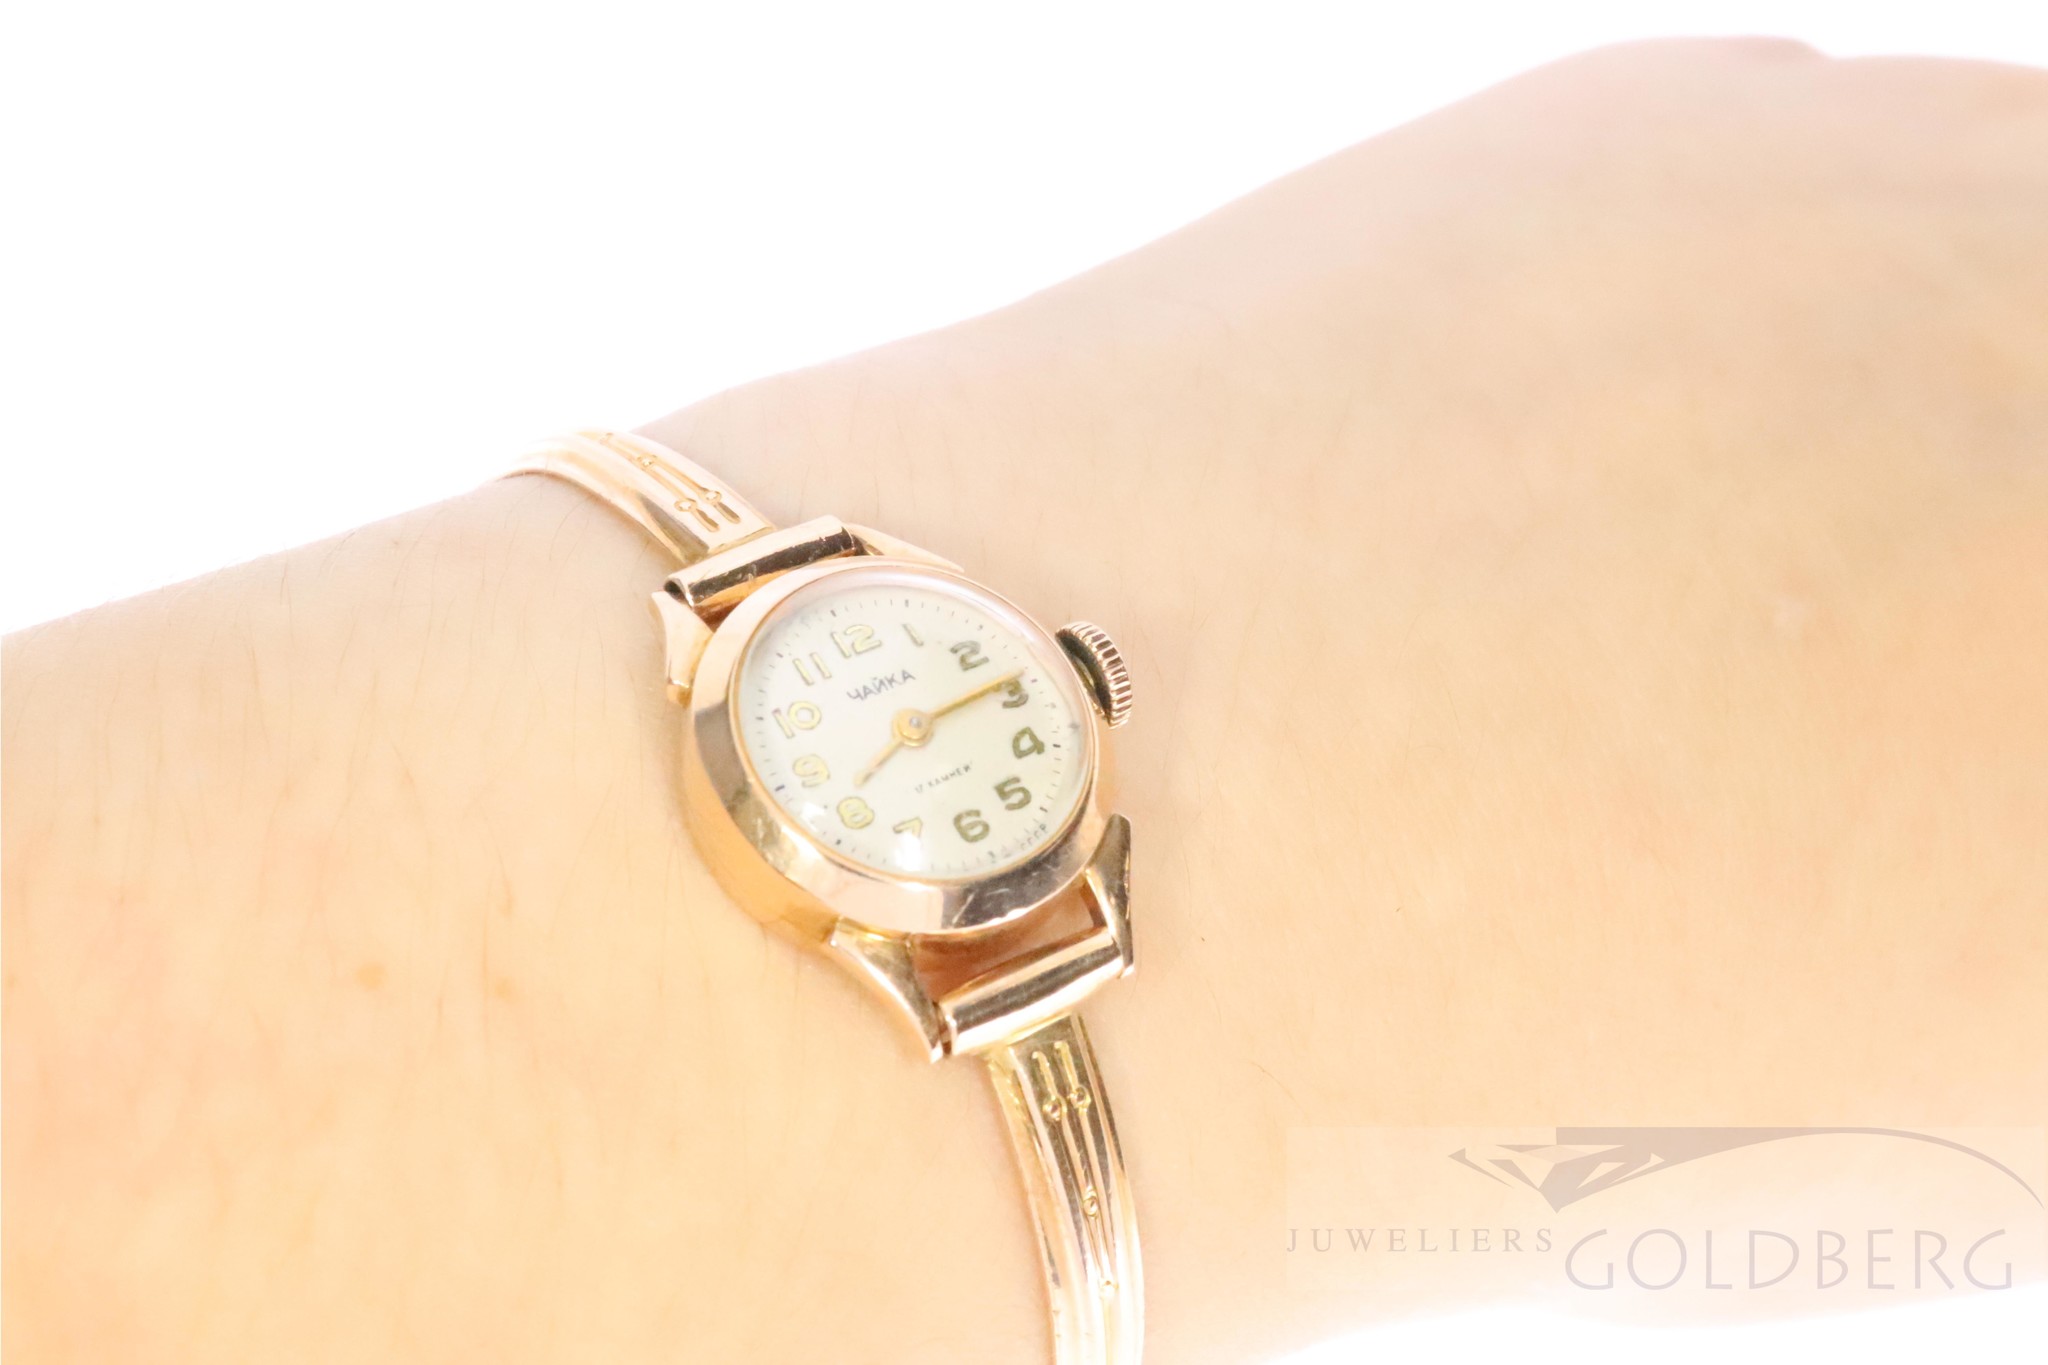 Draaien Wild gazon rose 14k gouden horloge uit Rusland - Goldberg